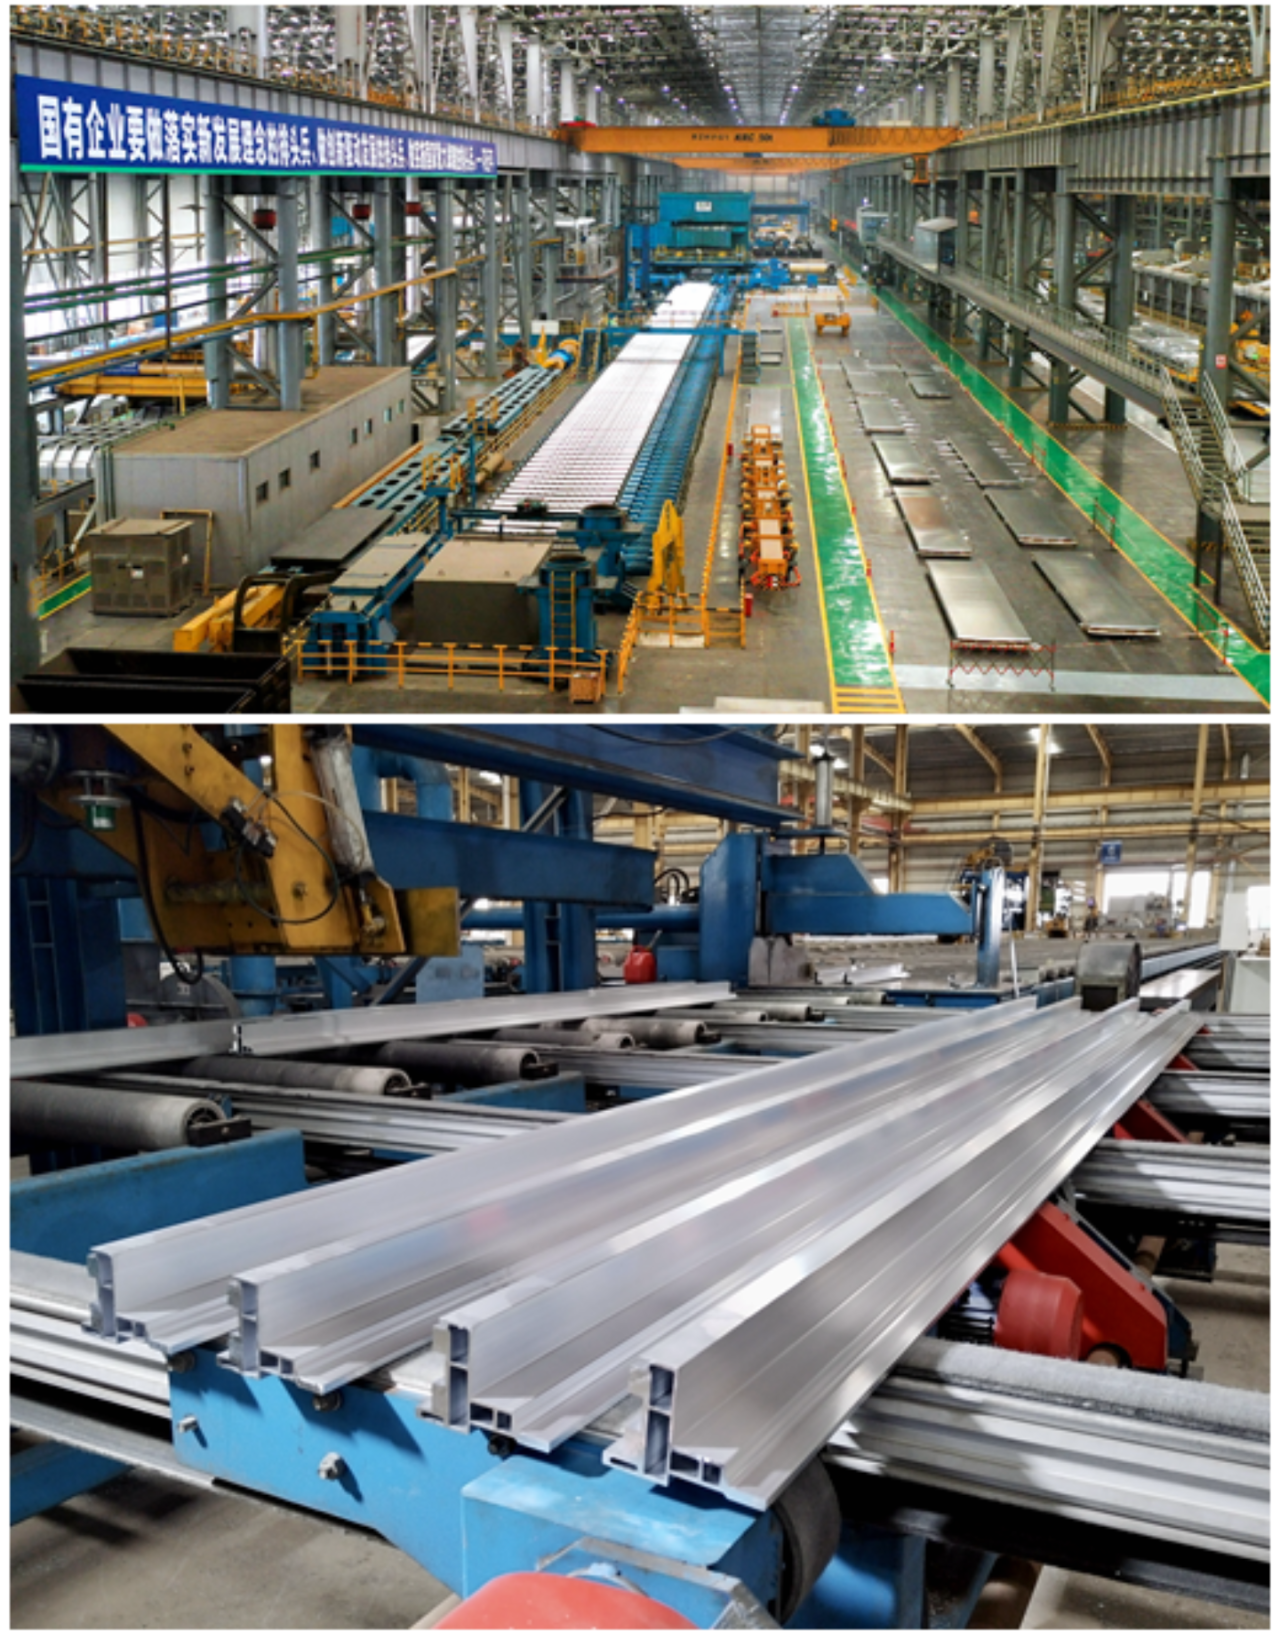 广西铝业集团：聚焦“两高一新” 蹄疾步稳打造铝产业龙头⑦.png